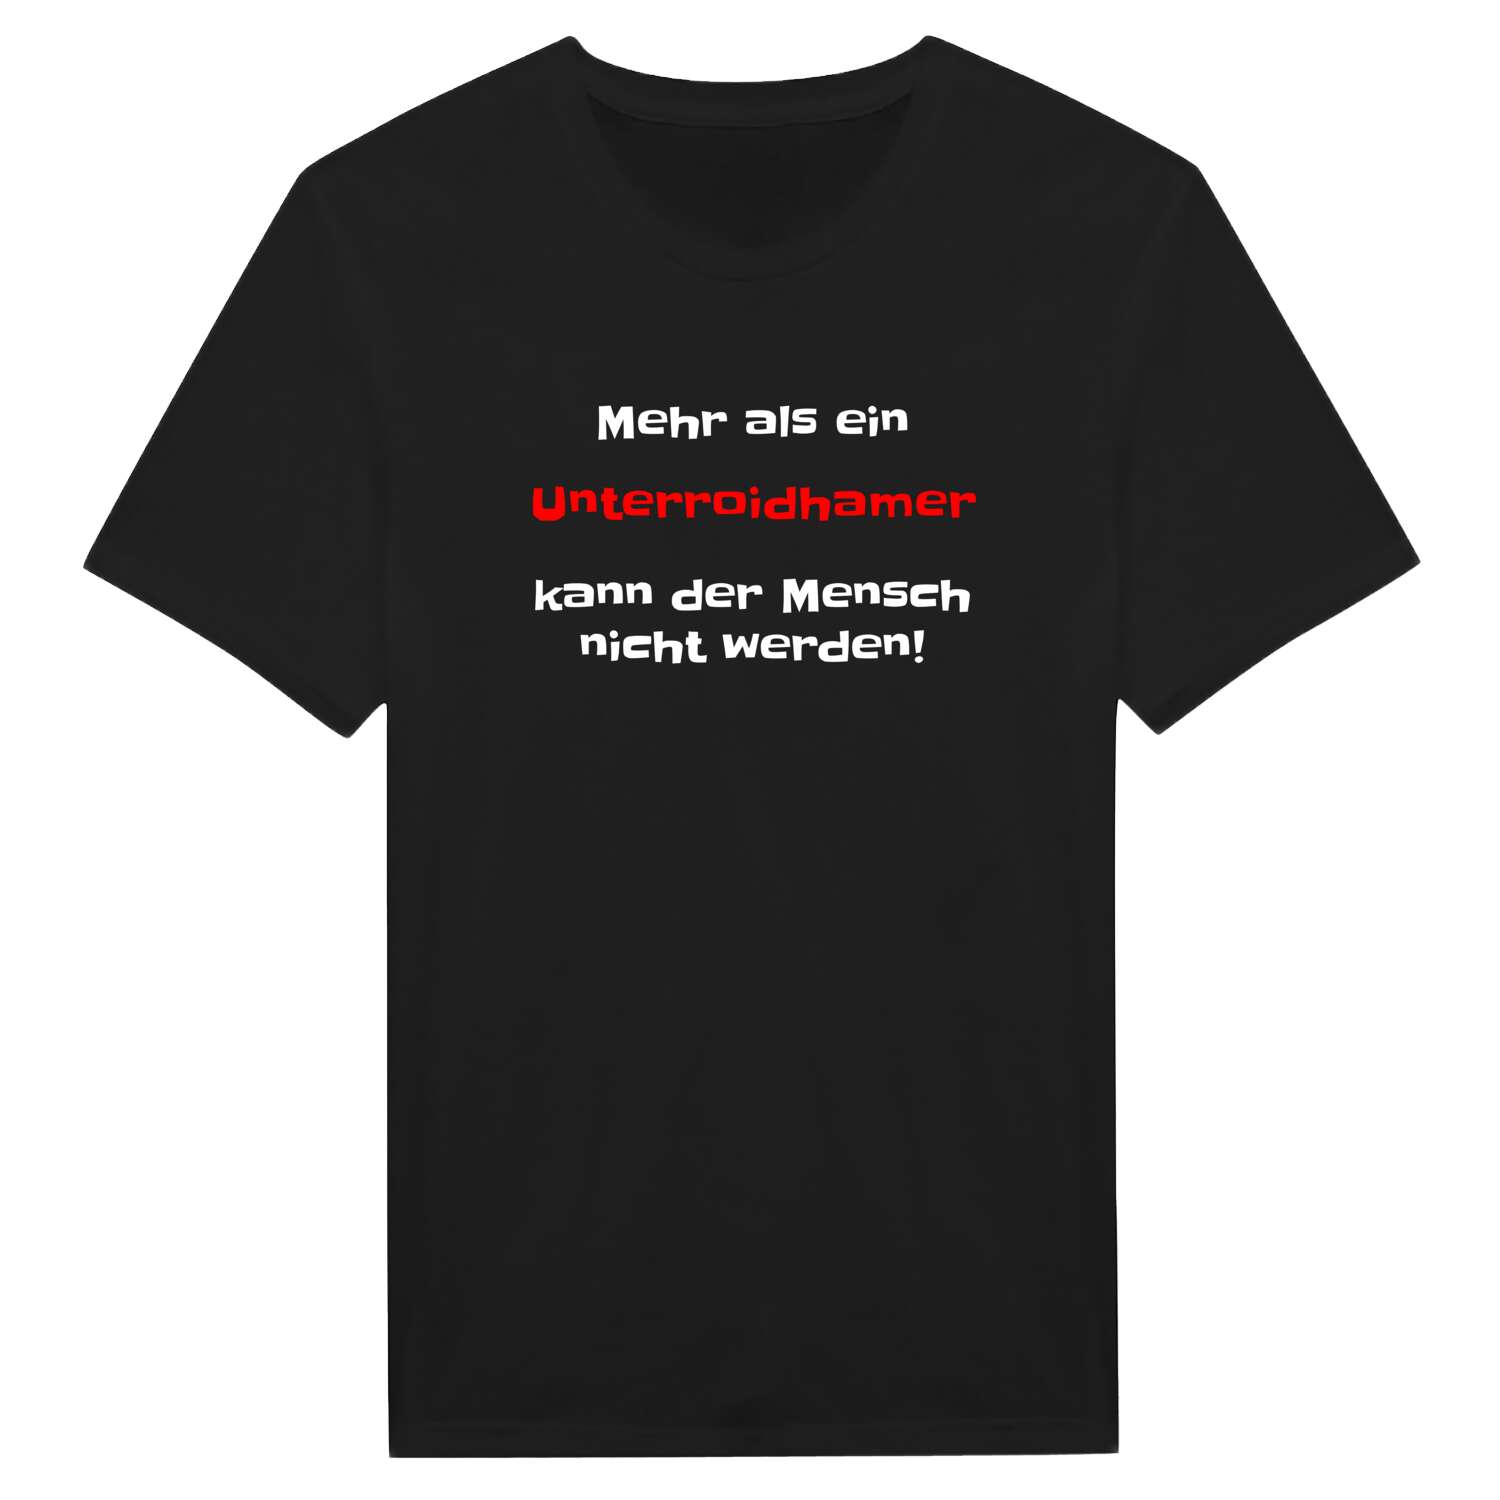 Unterroidham T-Shirt »Mehr als ein«